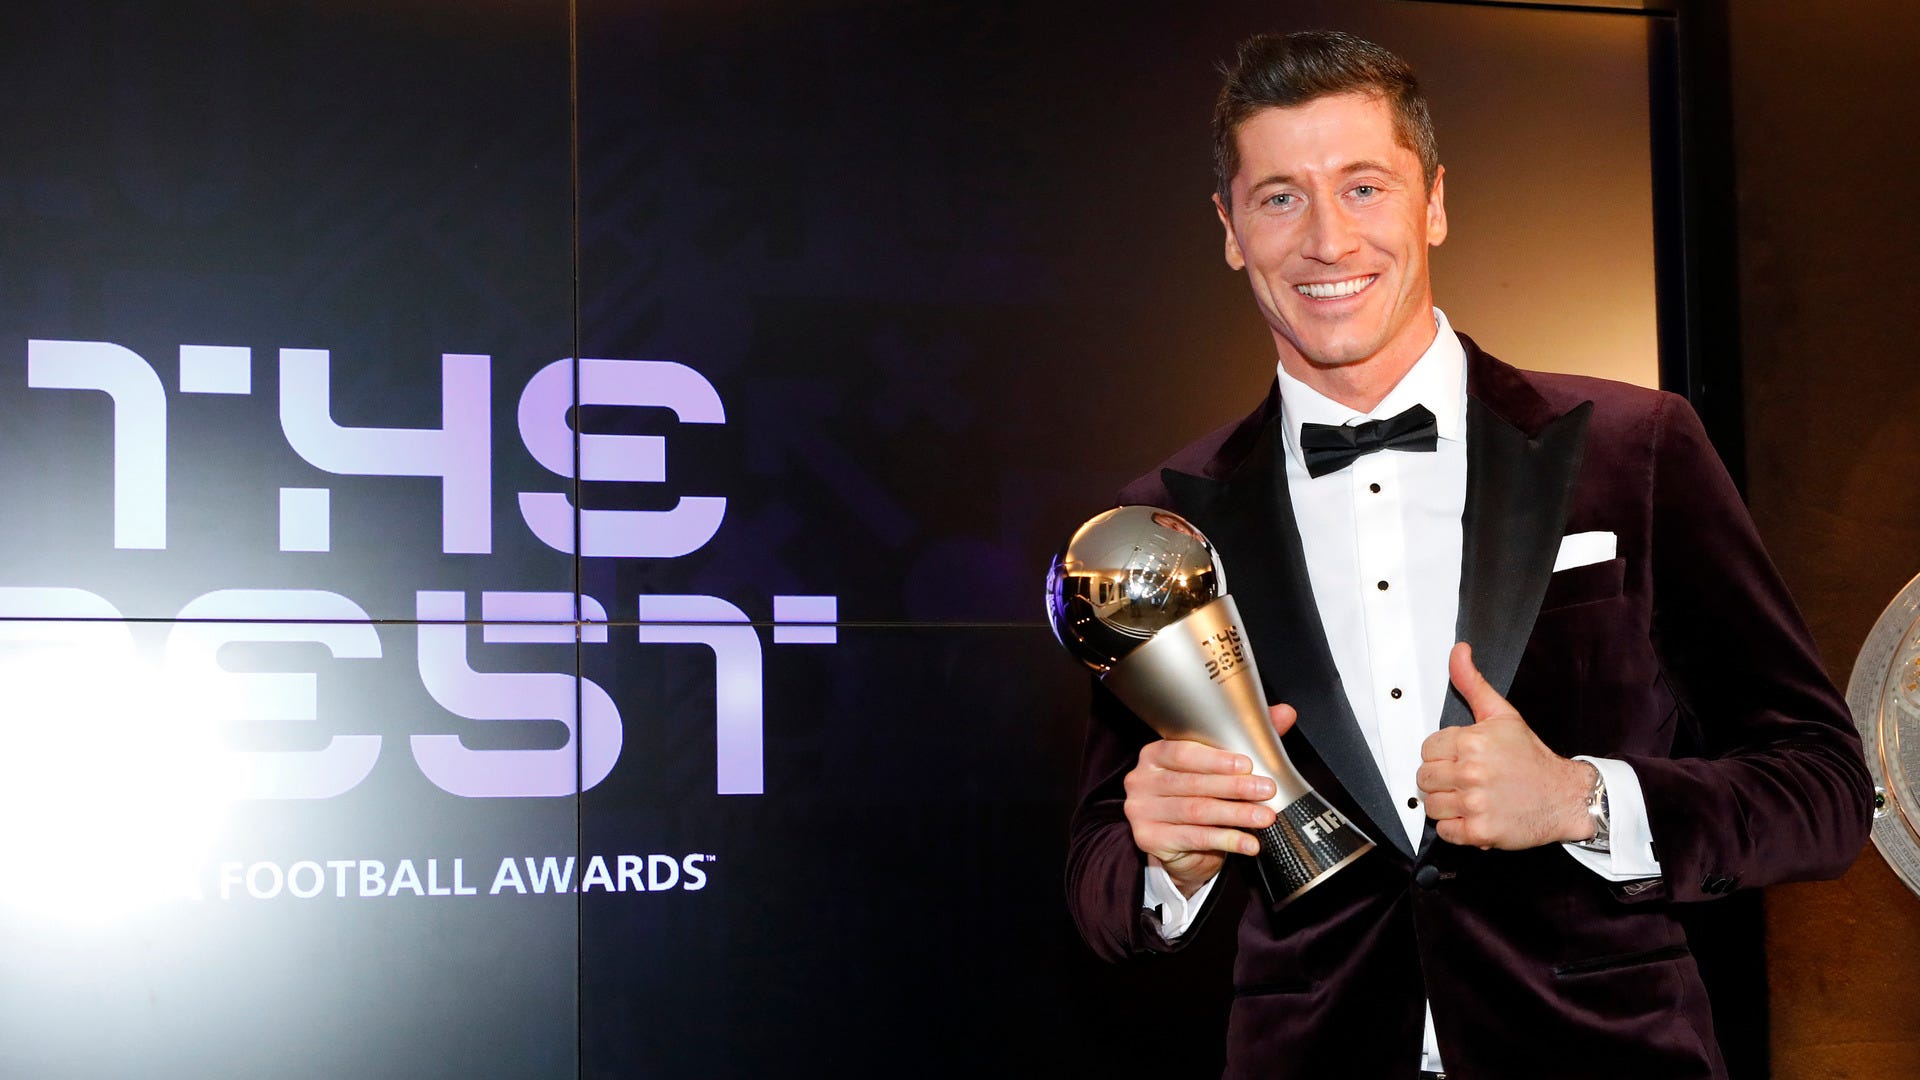 Prêmio Fifa The Best irá coroar o melhor jogador e a melhor